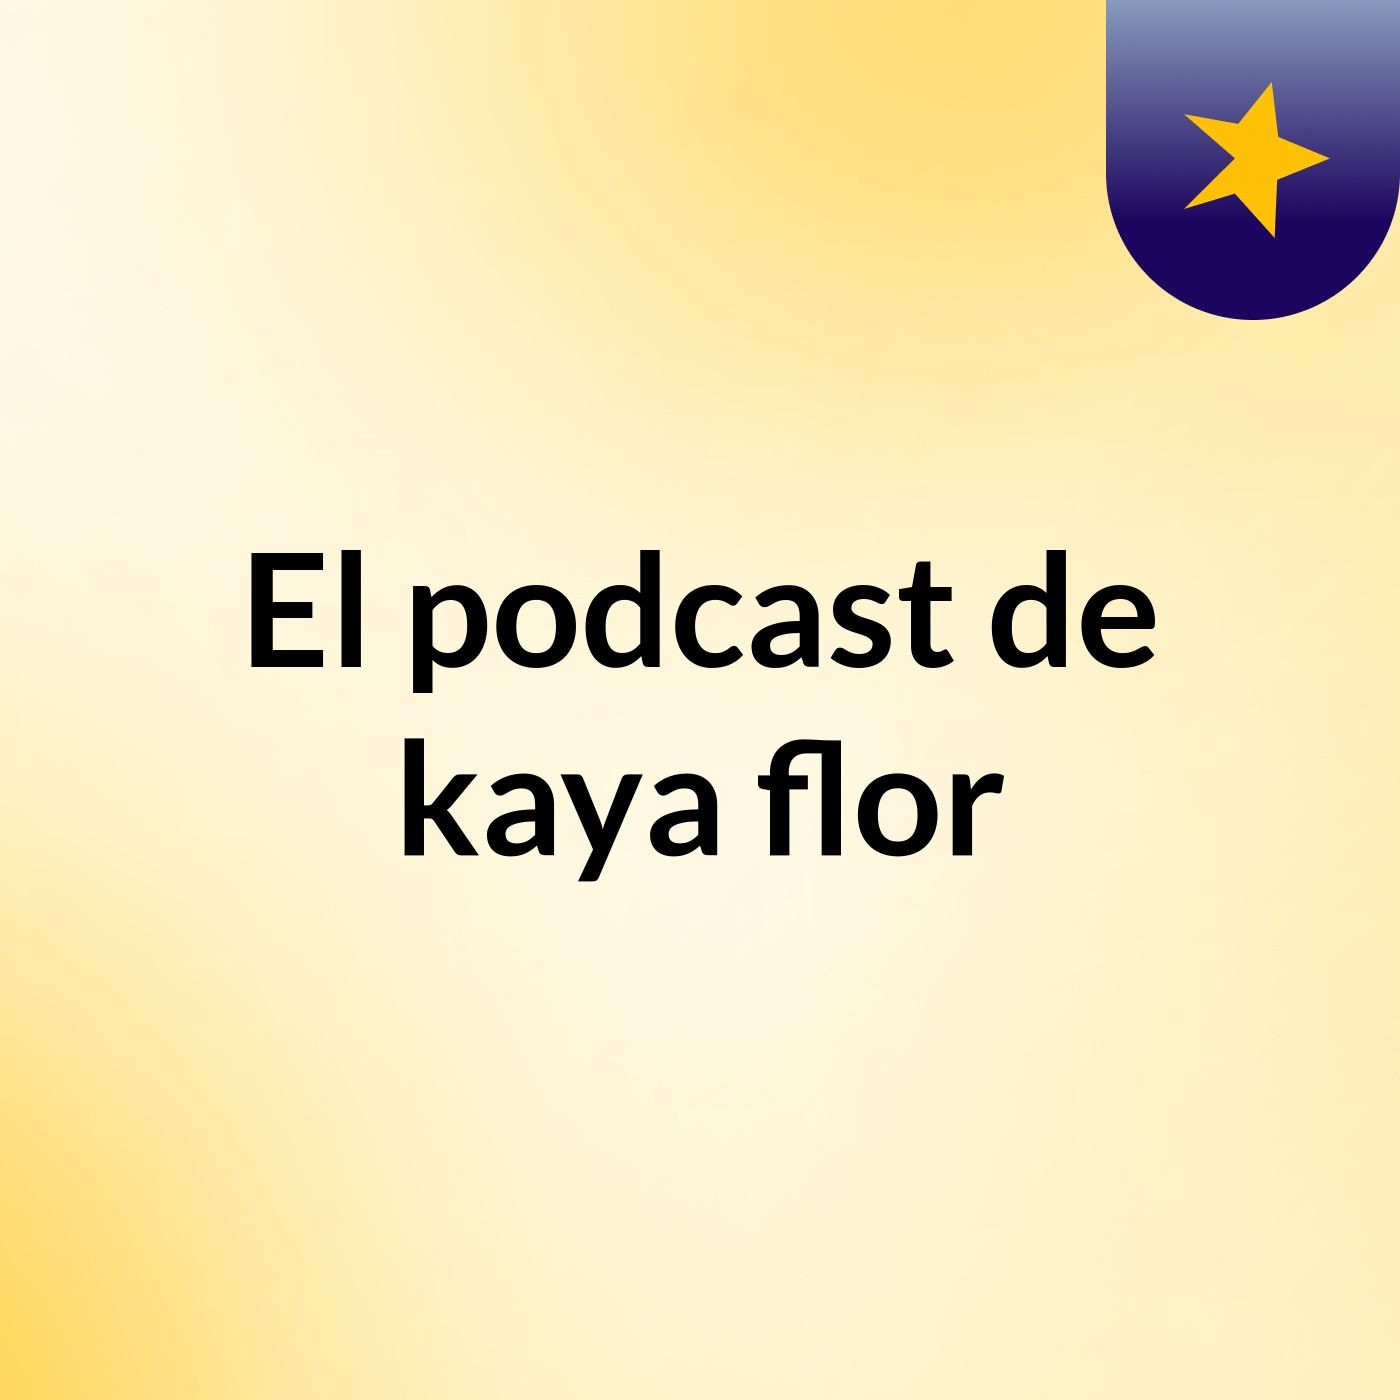 El podcast de kaya flor